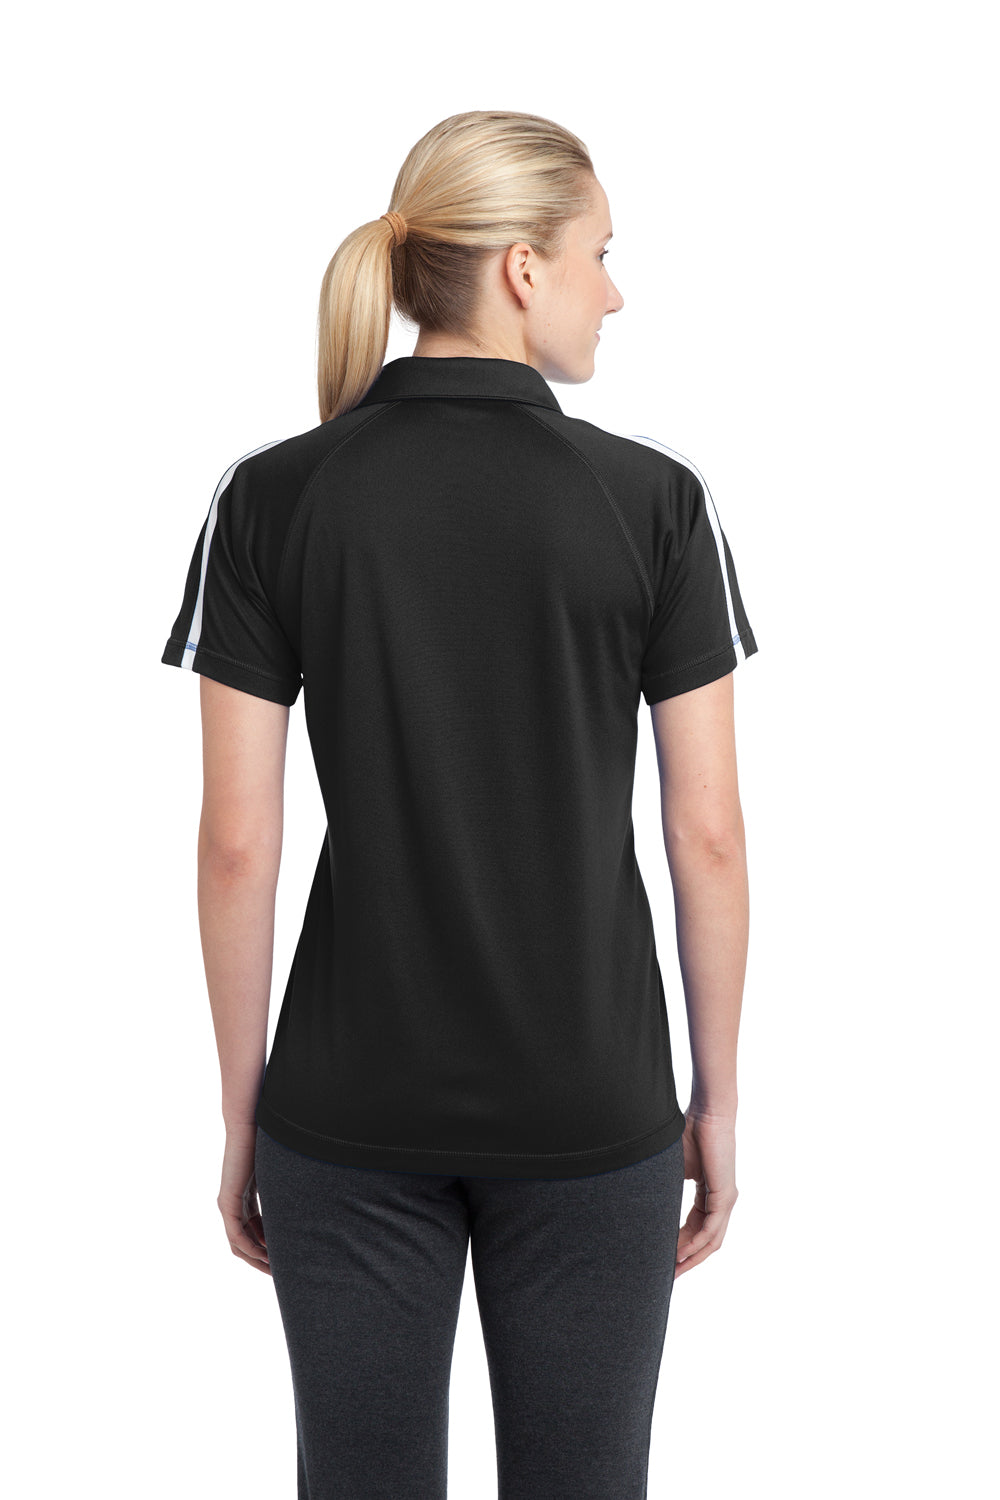 Sport-Tek LST685 Womens Micro-Mesh Moisture Wicking Short Sleeve Polo Shirt Black Back